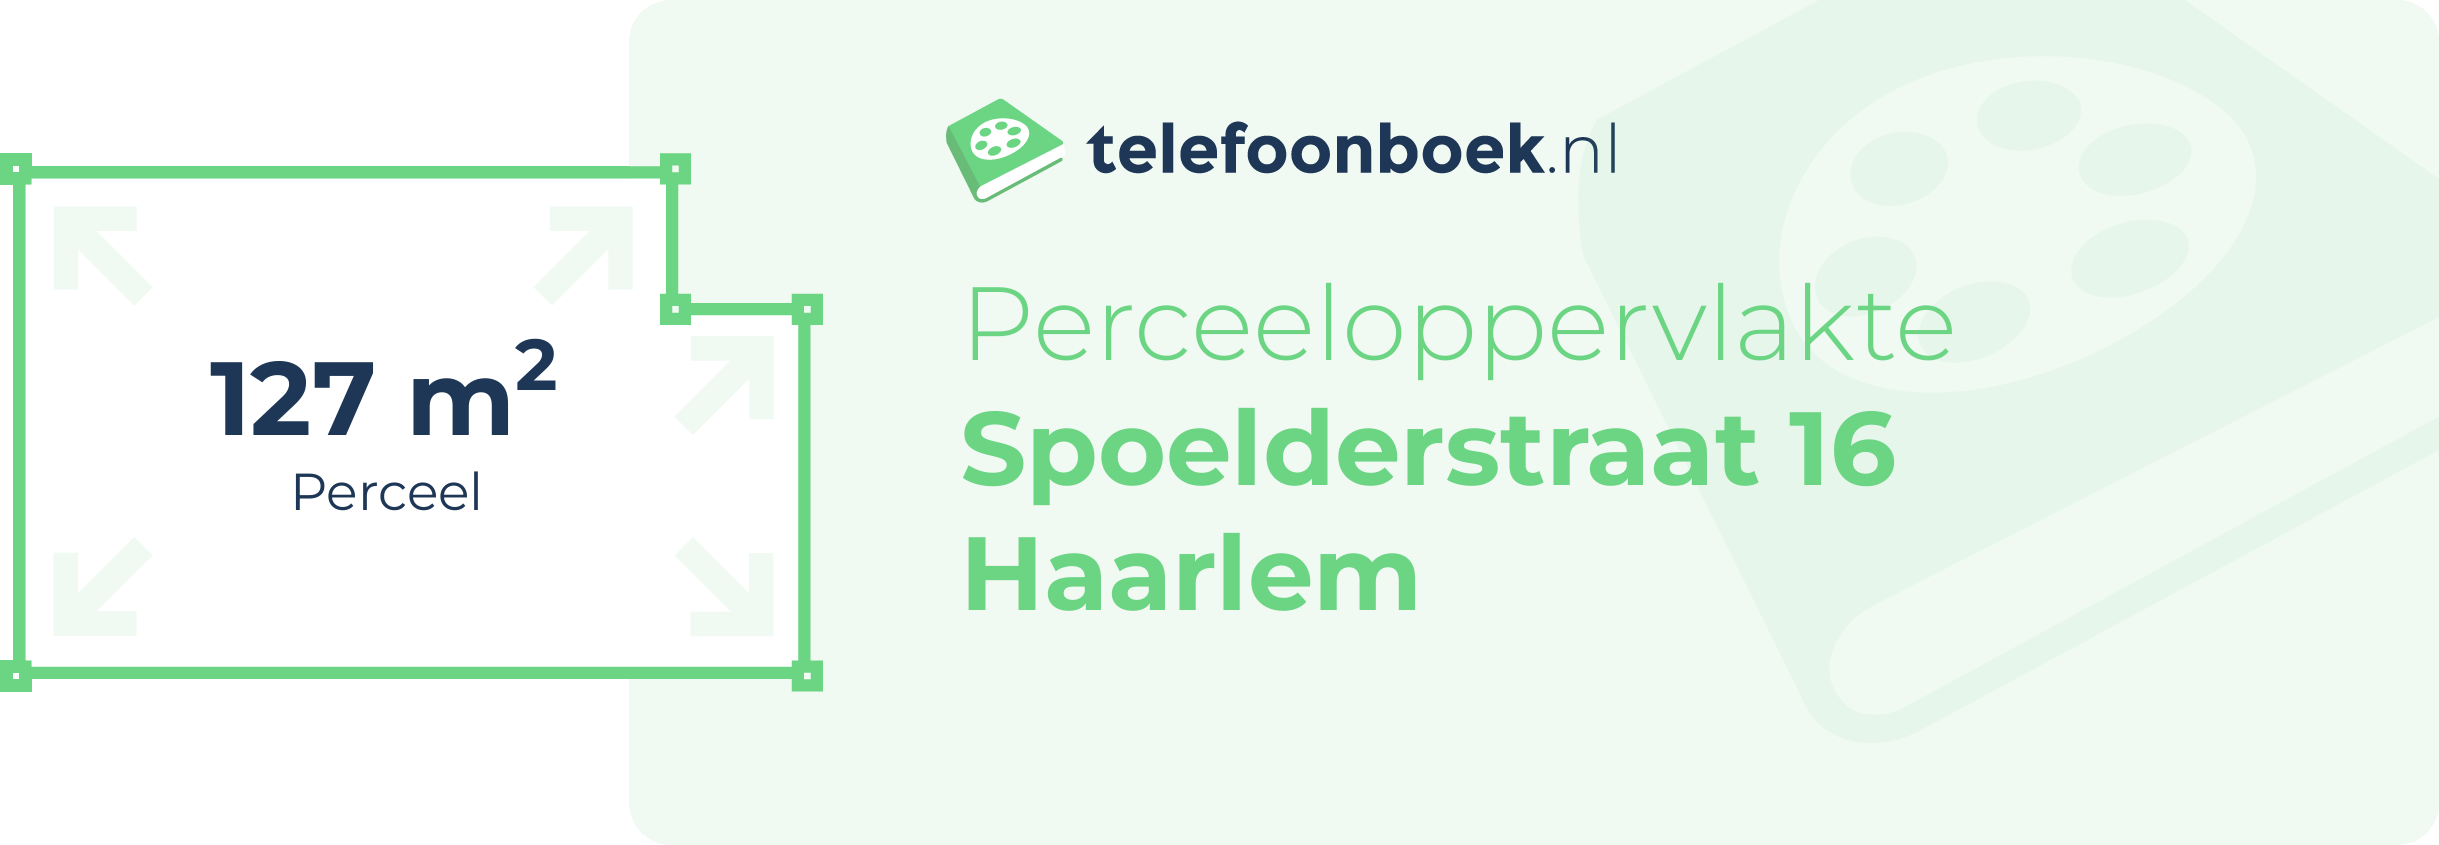 Perceeloppervlakte Spoelderstraat 16 Haarlem